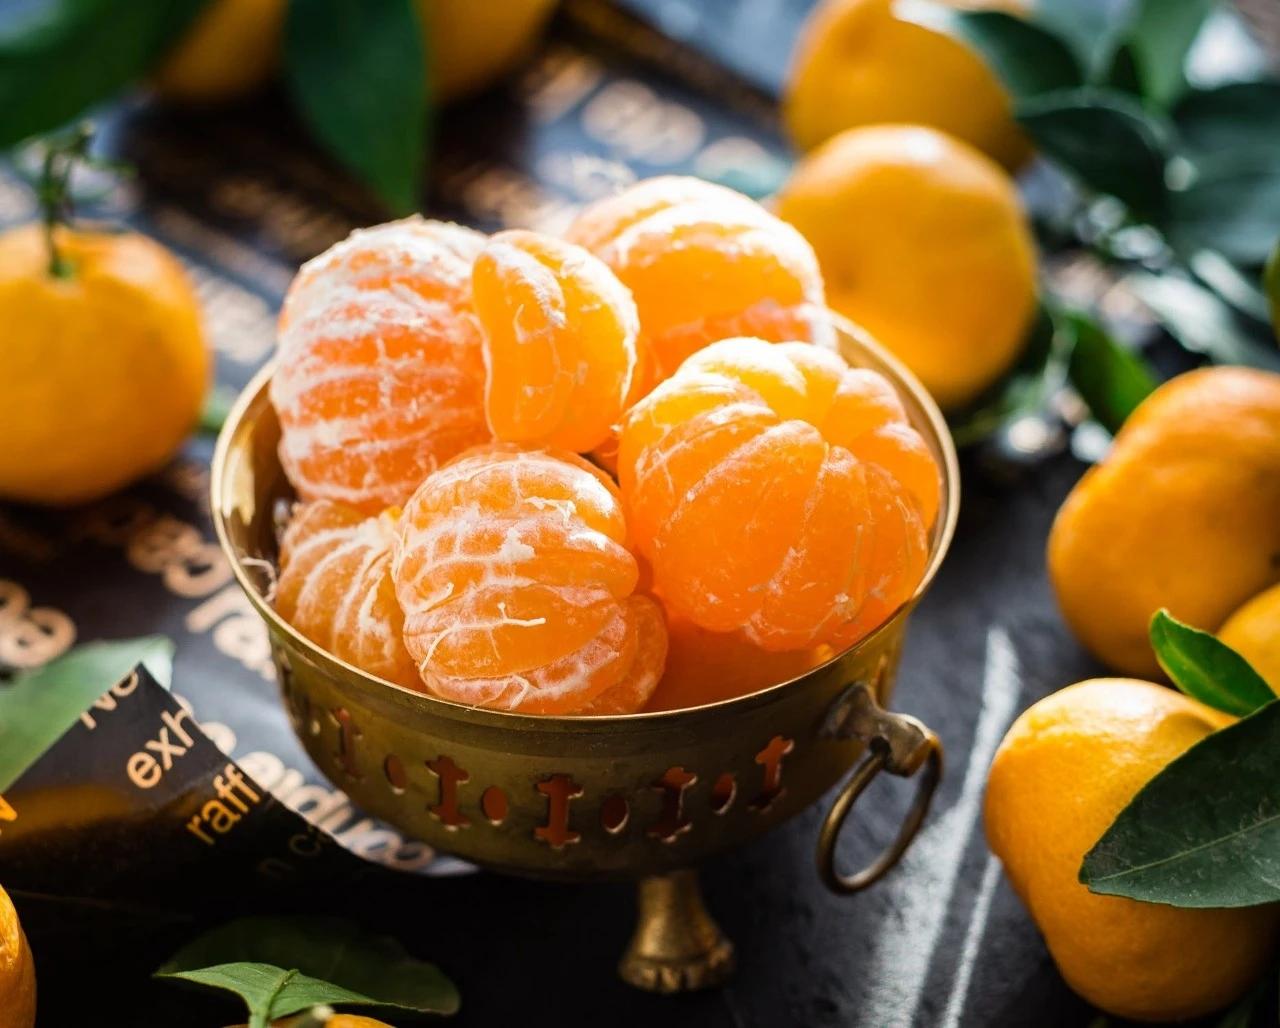 清泉蔌蔌先流齿,香雾霏霏欲噀人,有关橘子橙子的诗词你知道哪些呢?